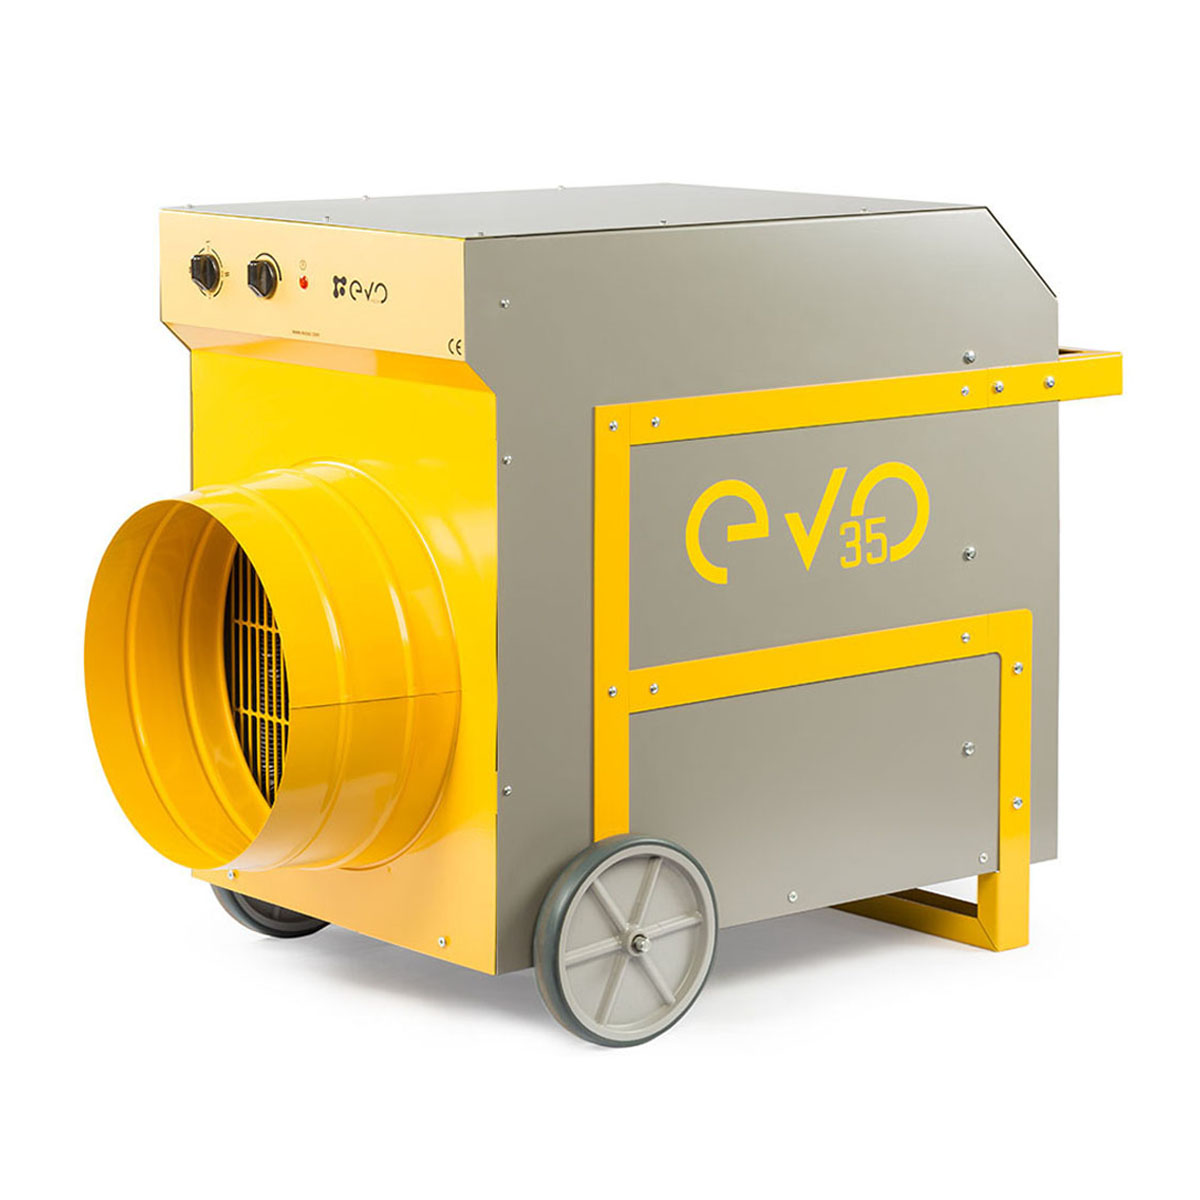 Evo35 - 35 kw Sanayi Tipi Elektrikli Fanlı Isıtıcı